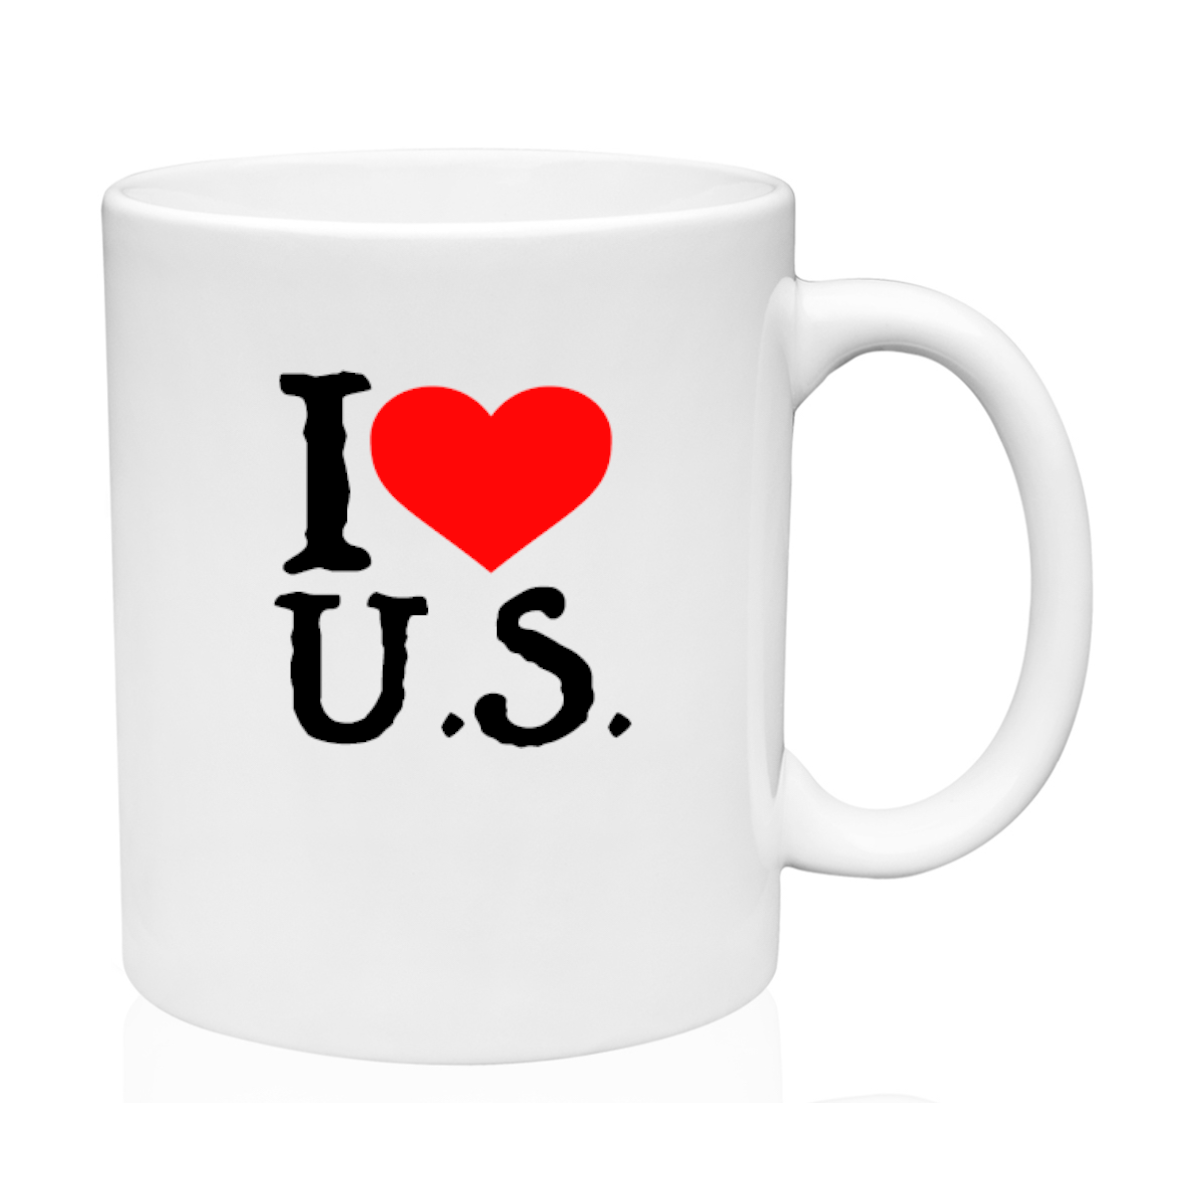 I Love USA Mug 11oz